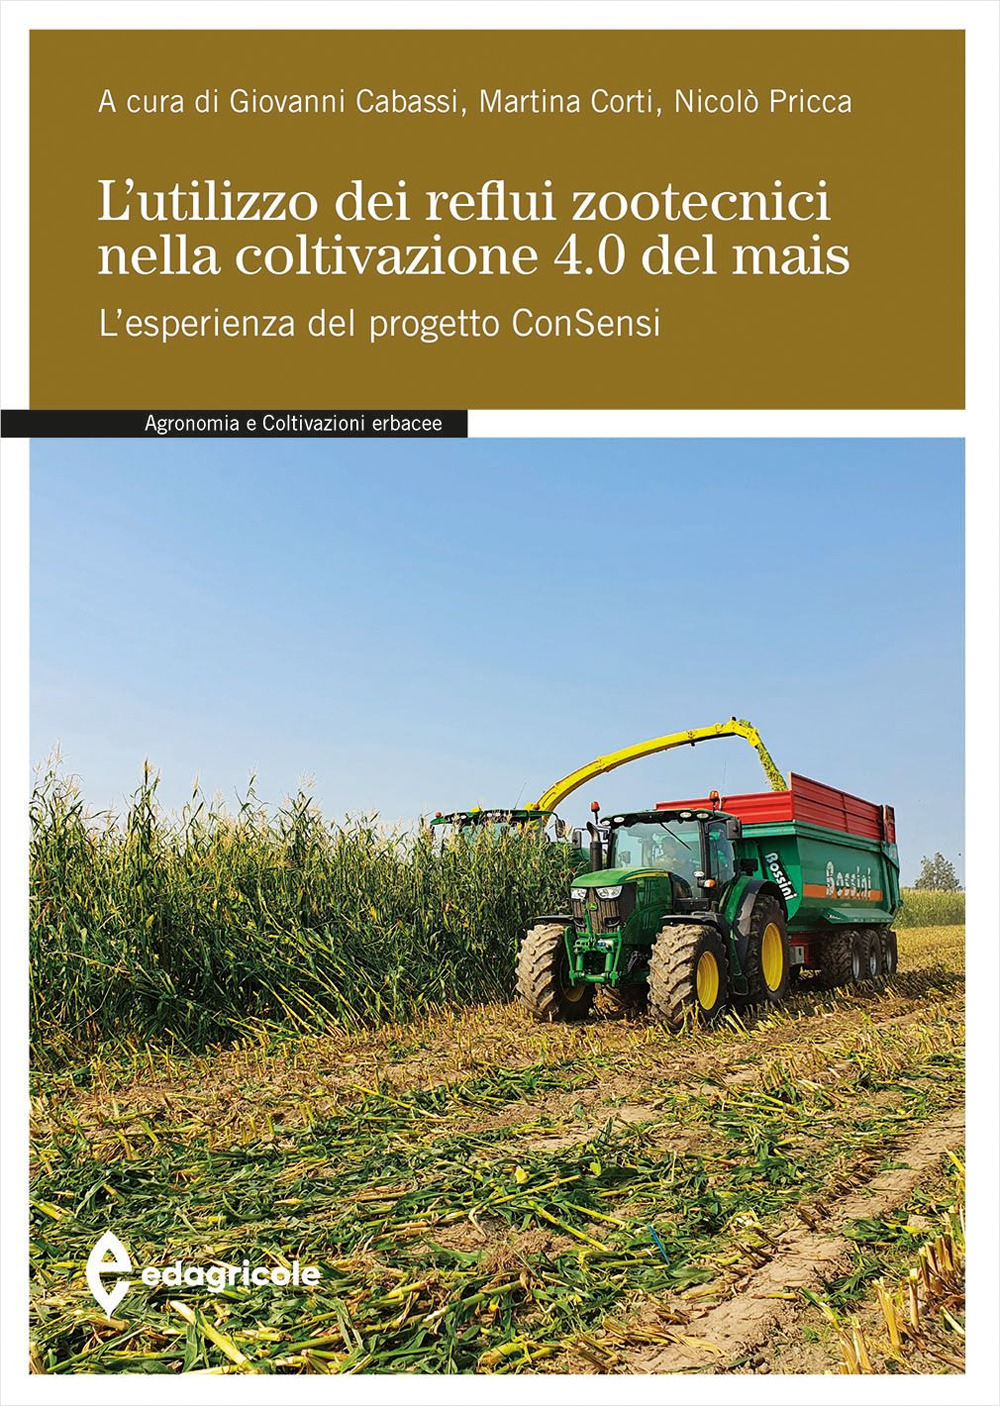 L'utilizzo dei reflui zootecnici nella coltivazione 4.0 del mais. L'esperienza del progetto ConSensi